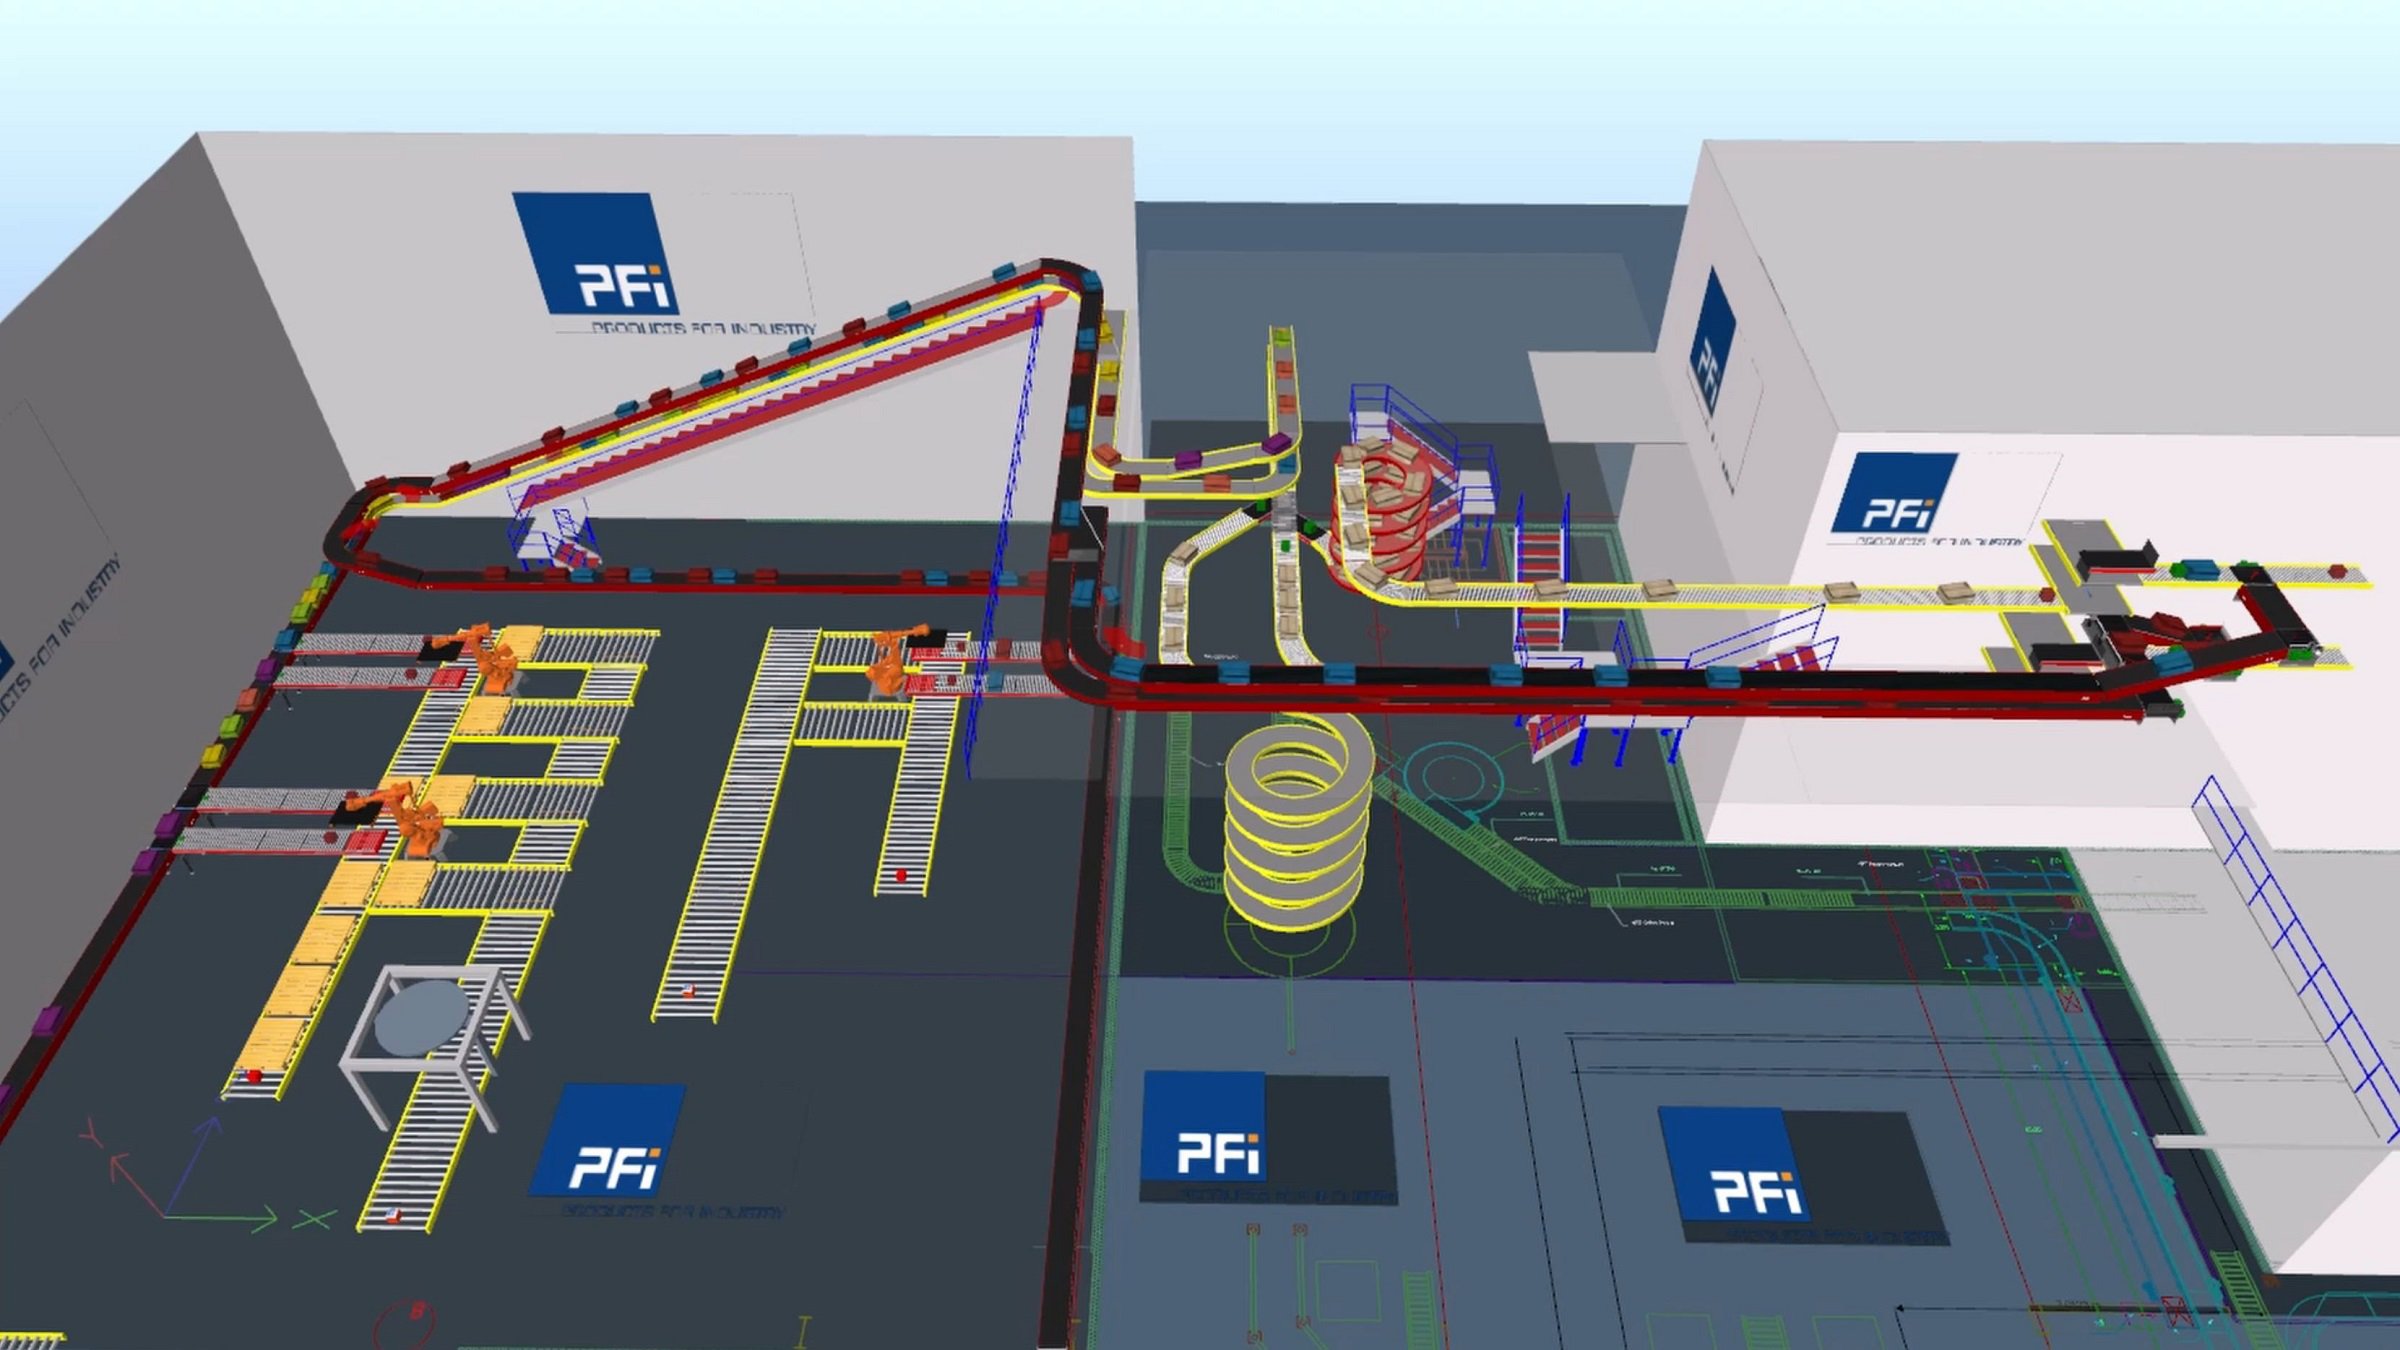 Emulate3D ermöglicht es PFi, eine exakte Visualisierung der Anlagen und Automatisierungseinrichtungen des Kunden zu erstellen und deren Betrieb mit realitätsgetreuer Darstellung zu simulieren